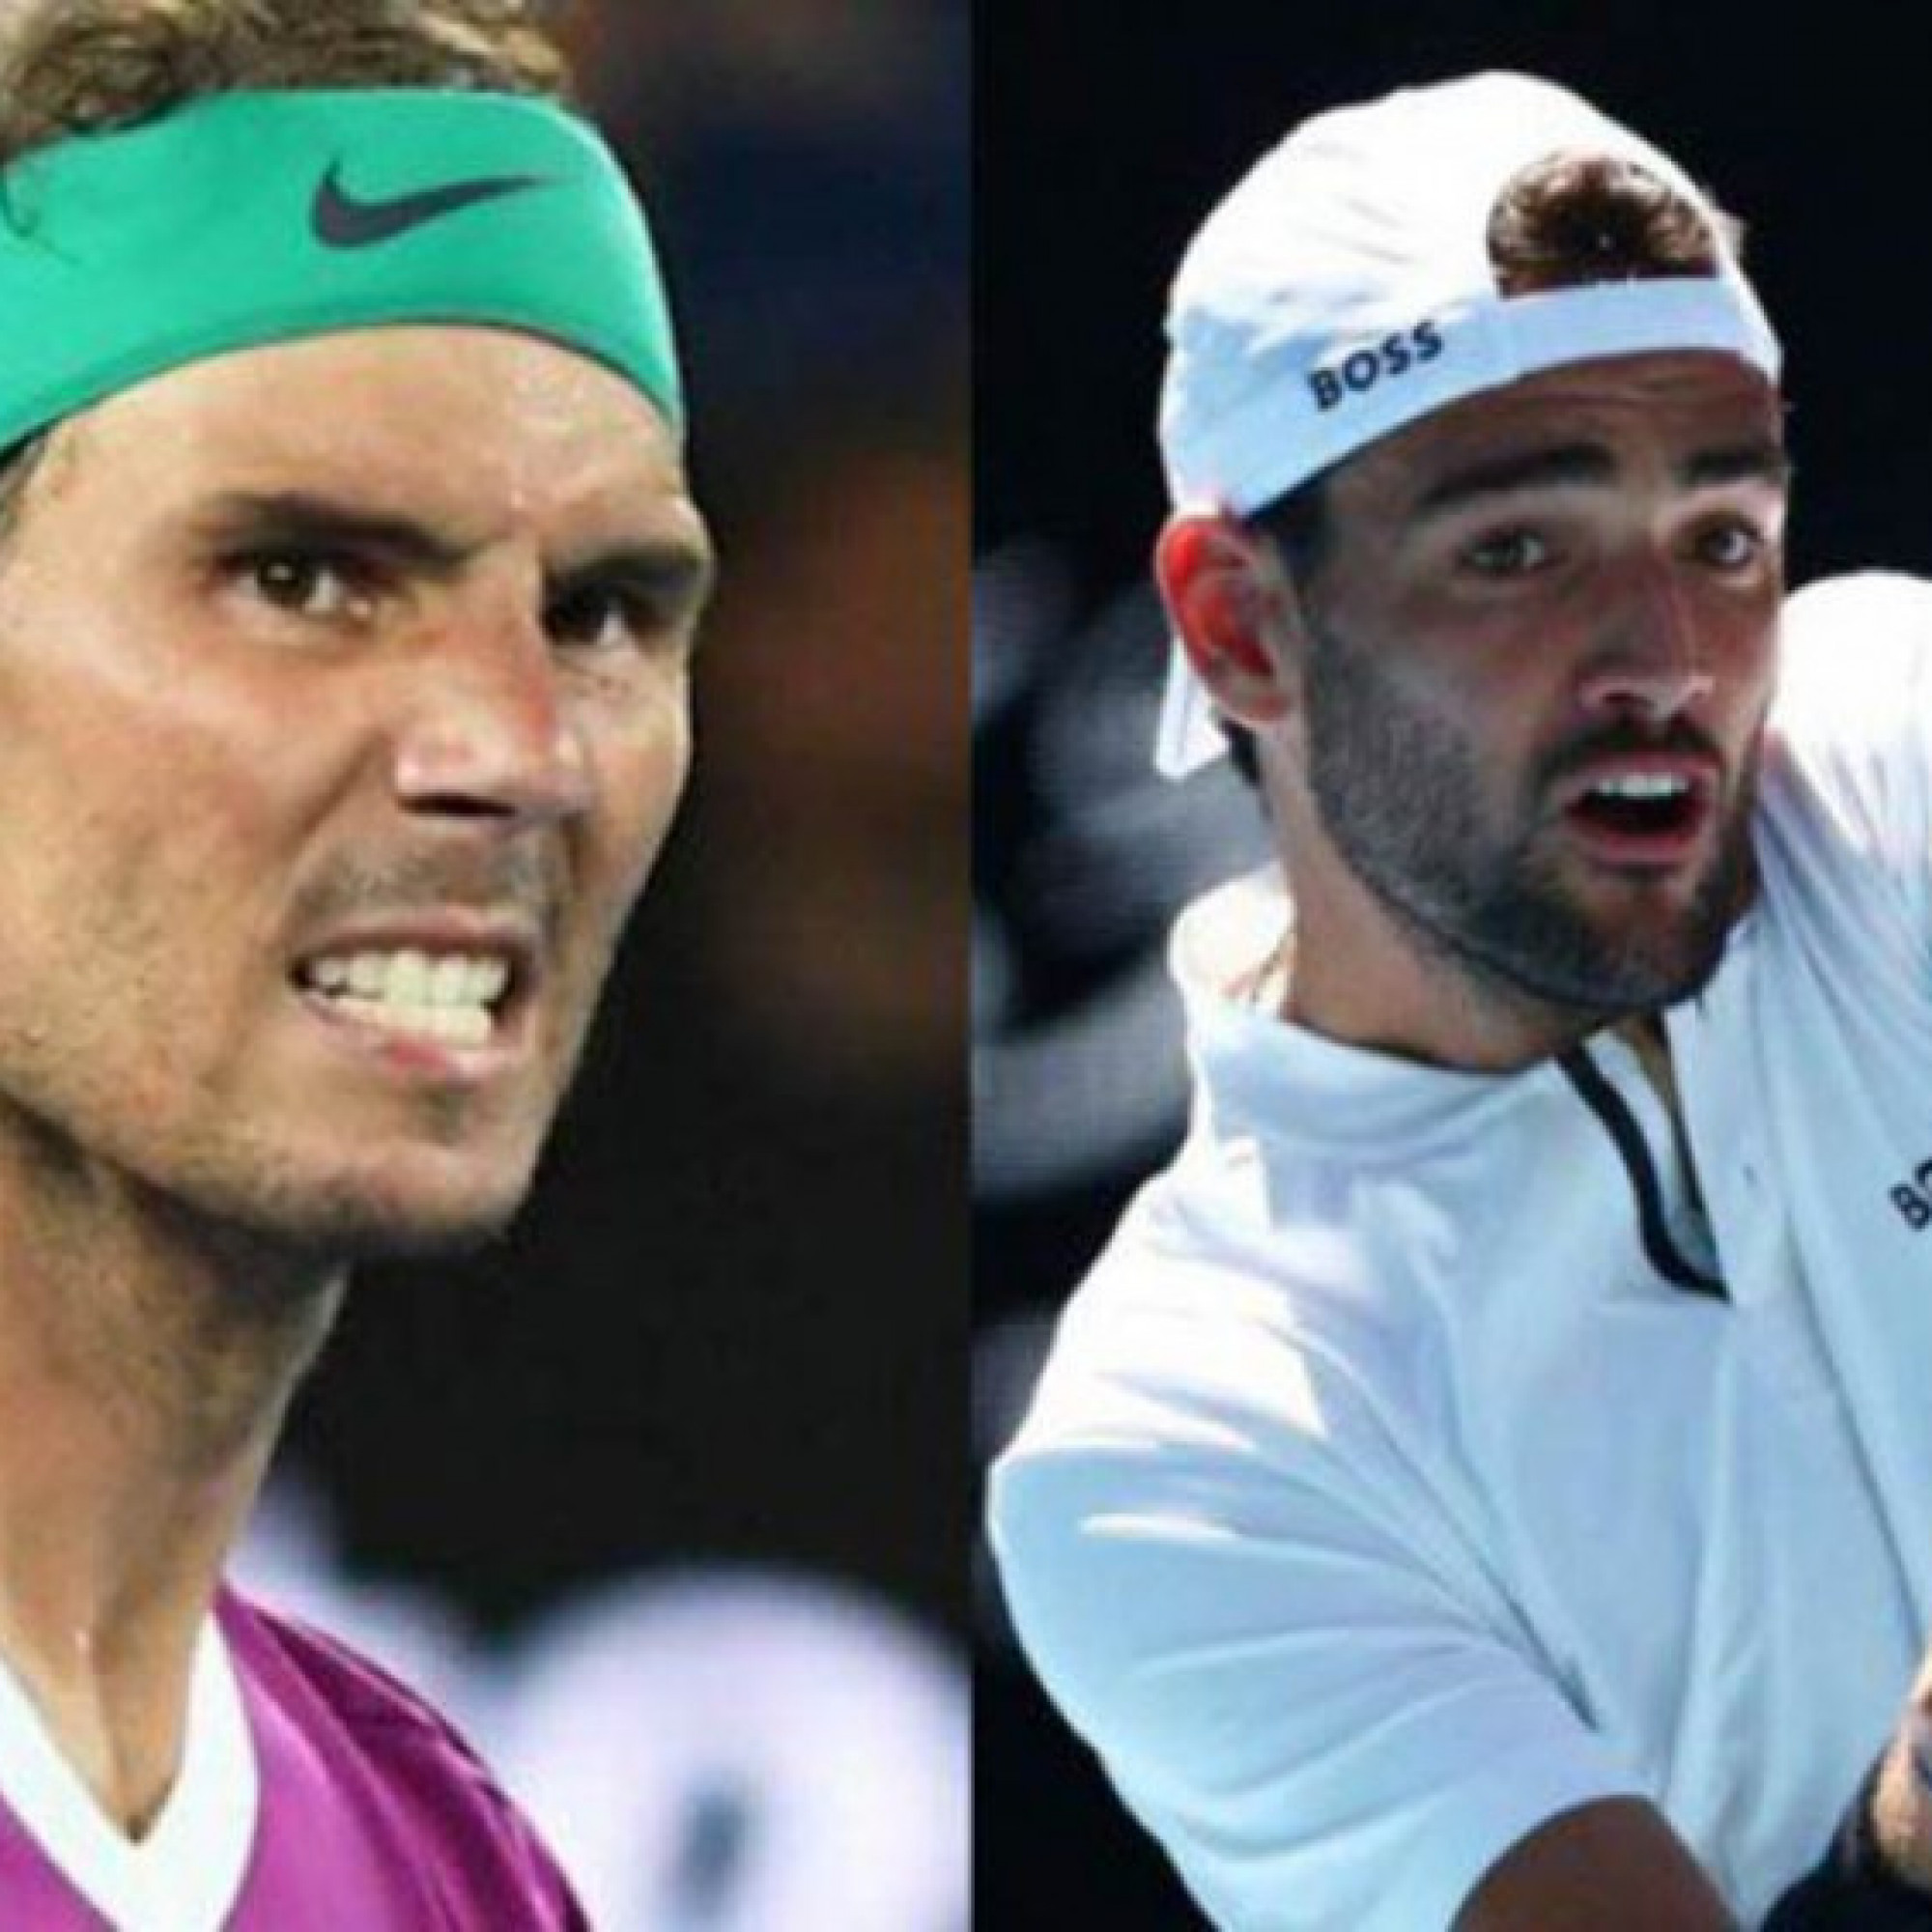  - Trực tiếp tennis Nadal - Berrettini: Thế trận giằng co (Bán kết Australian Open)